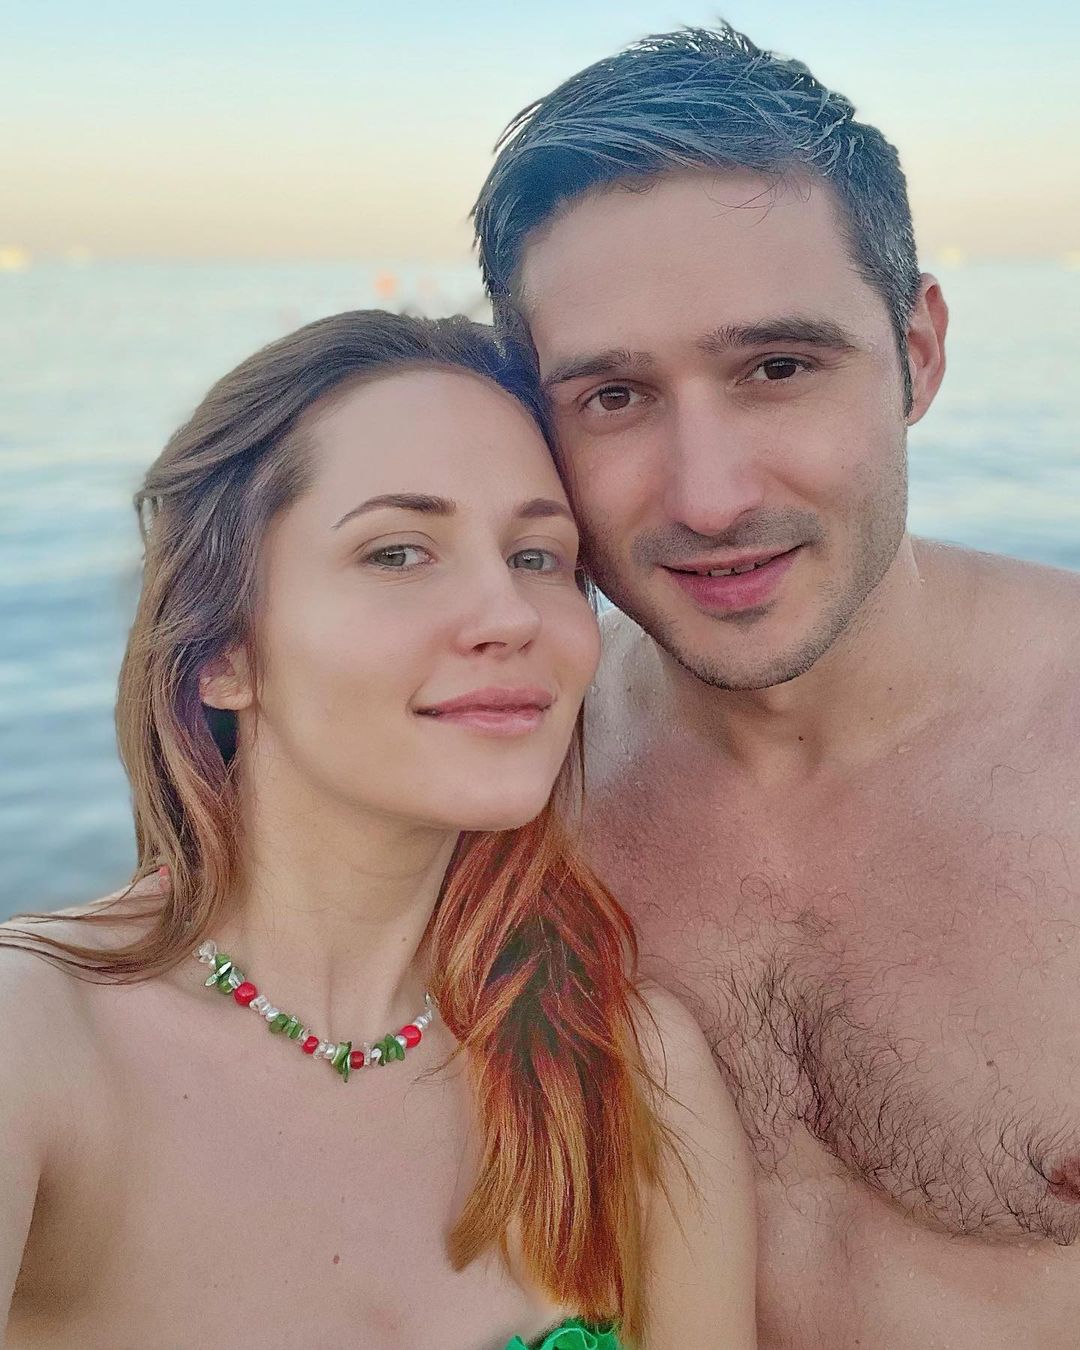 Несмотря на критику, Наталка Денисенко извинилась за мужа и поддержала его в сложный период. Фото: Instagram.com/natalka_denisenko/